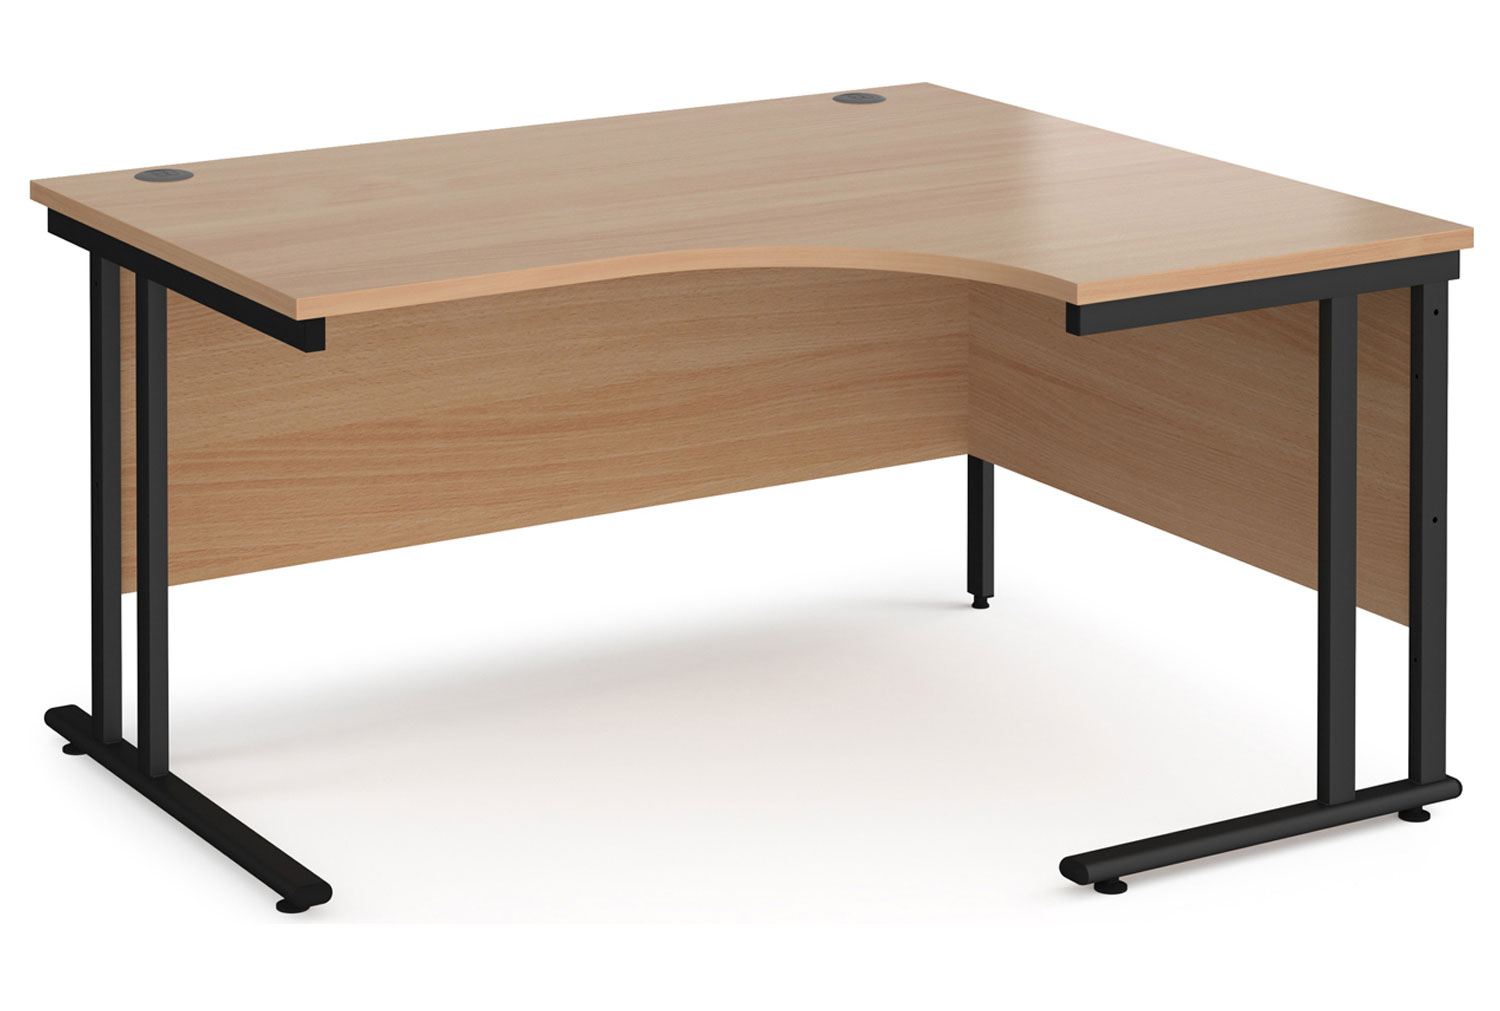 Value Line Deluxe C-Leg Right Hand Ergonomic Office Desk (Black Legs), 140wx120/80dx73h (cm), Beech